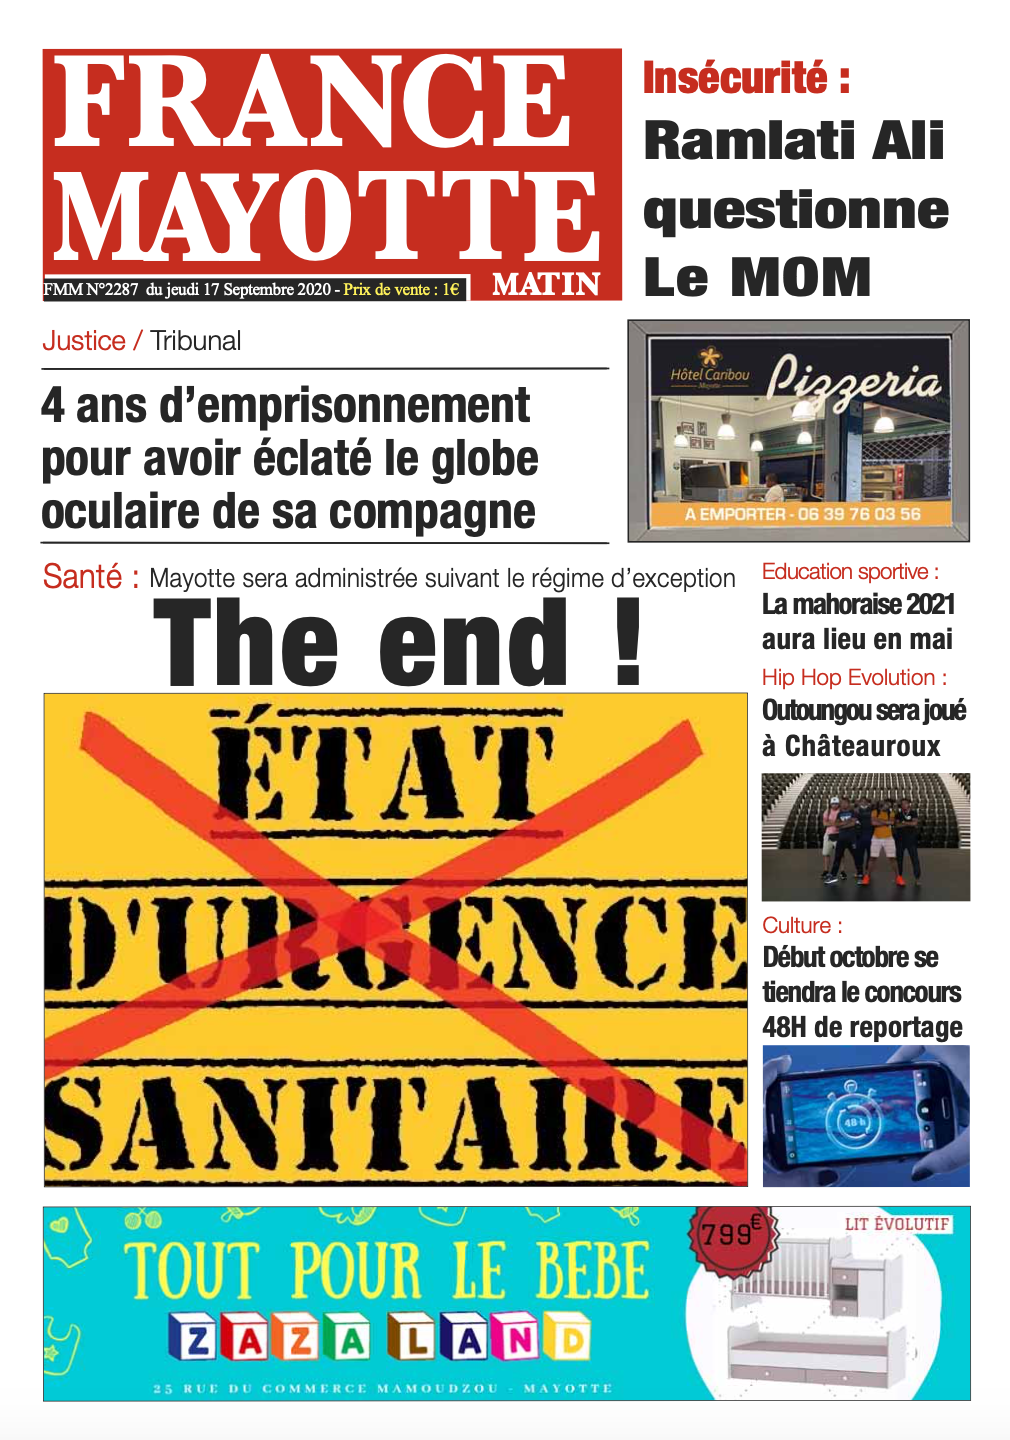 France Mayotte Jeudi 17 septembre 2020